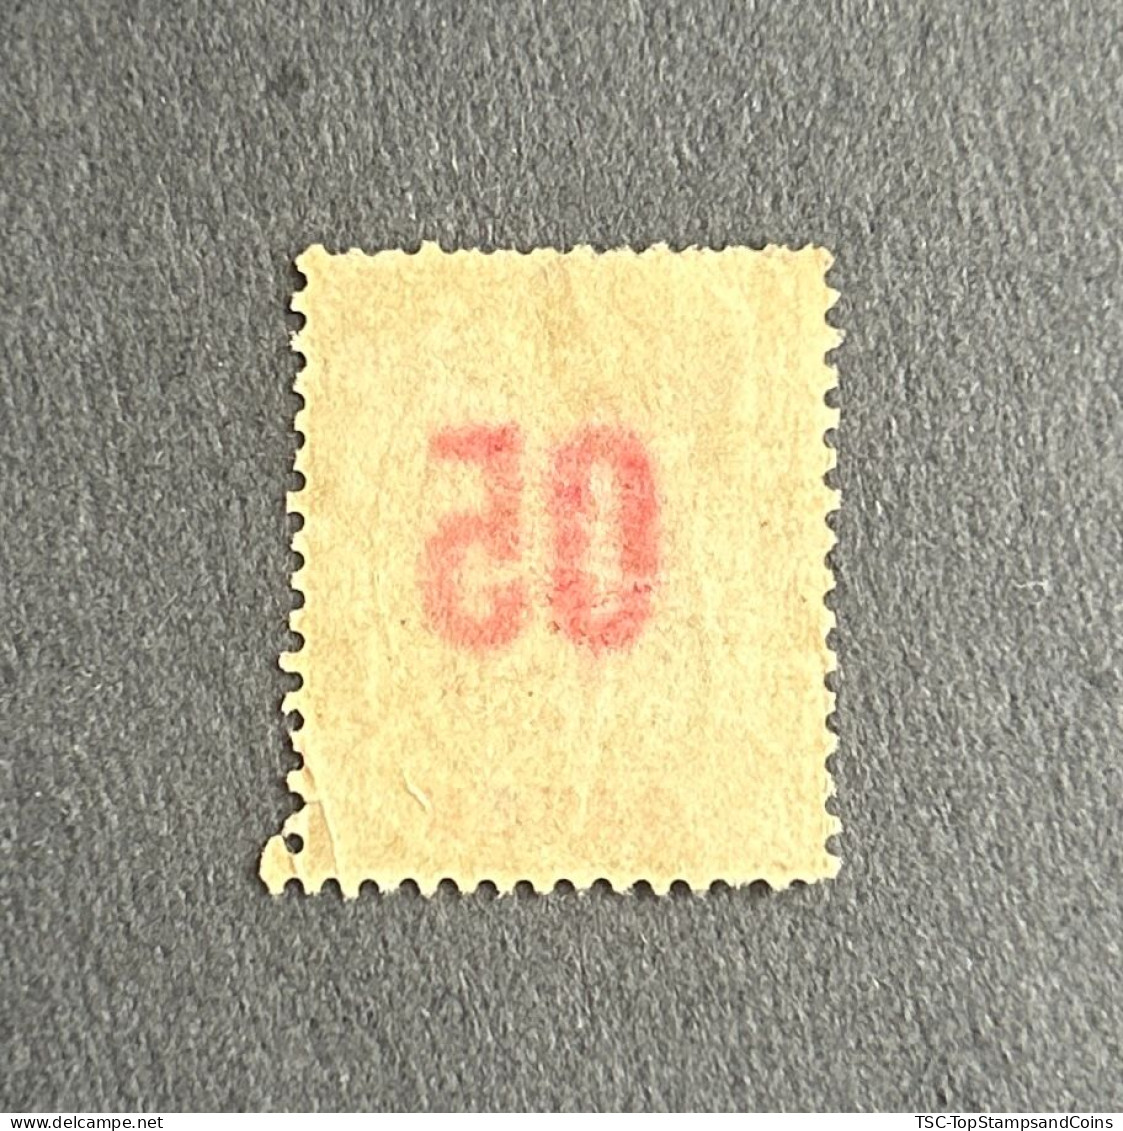 FRAGA0068U2 - Mythology - Surcharged 5 C Over 15 C Used Stamp - Gabon - 1912 - Usati